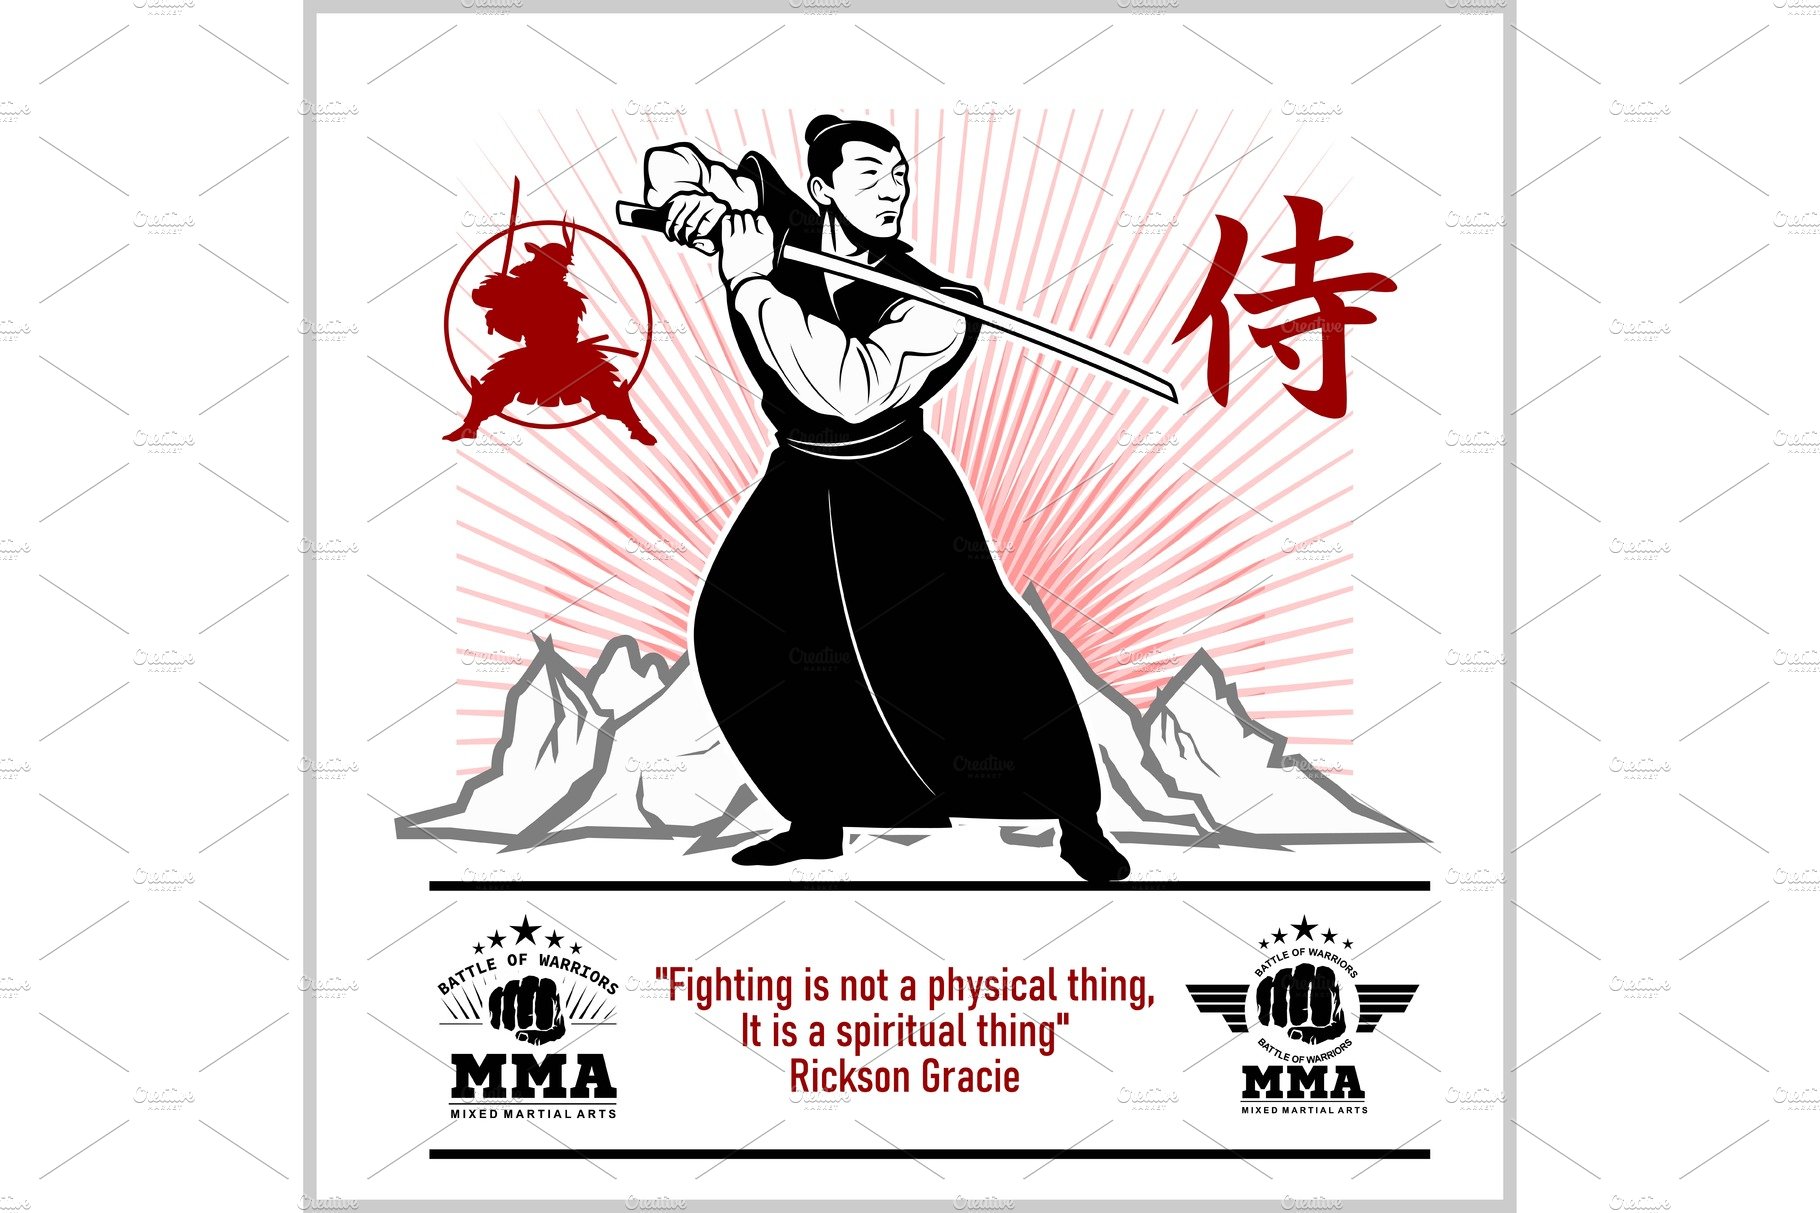 Samurai Warrior With Katana Sword at cover image.